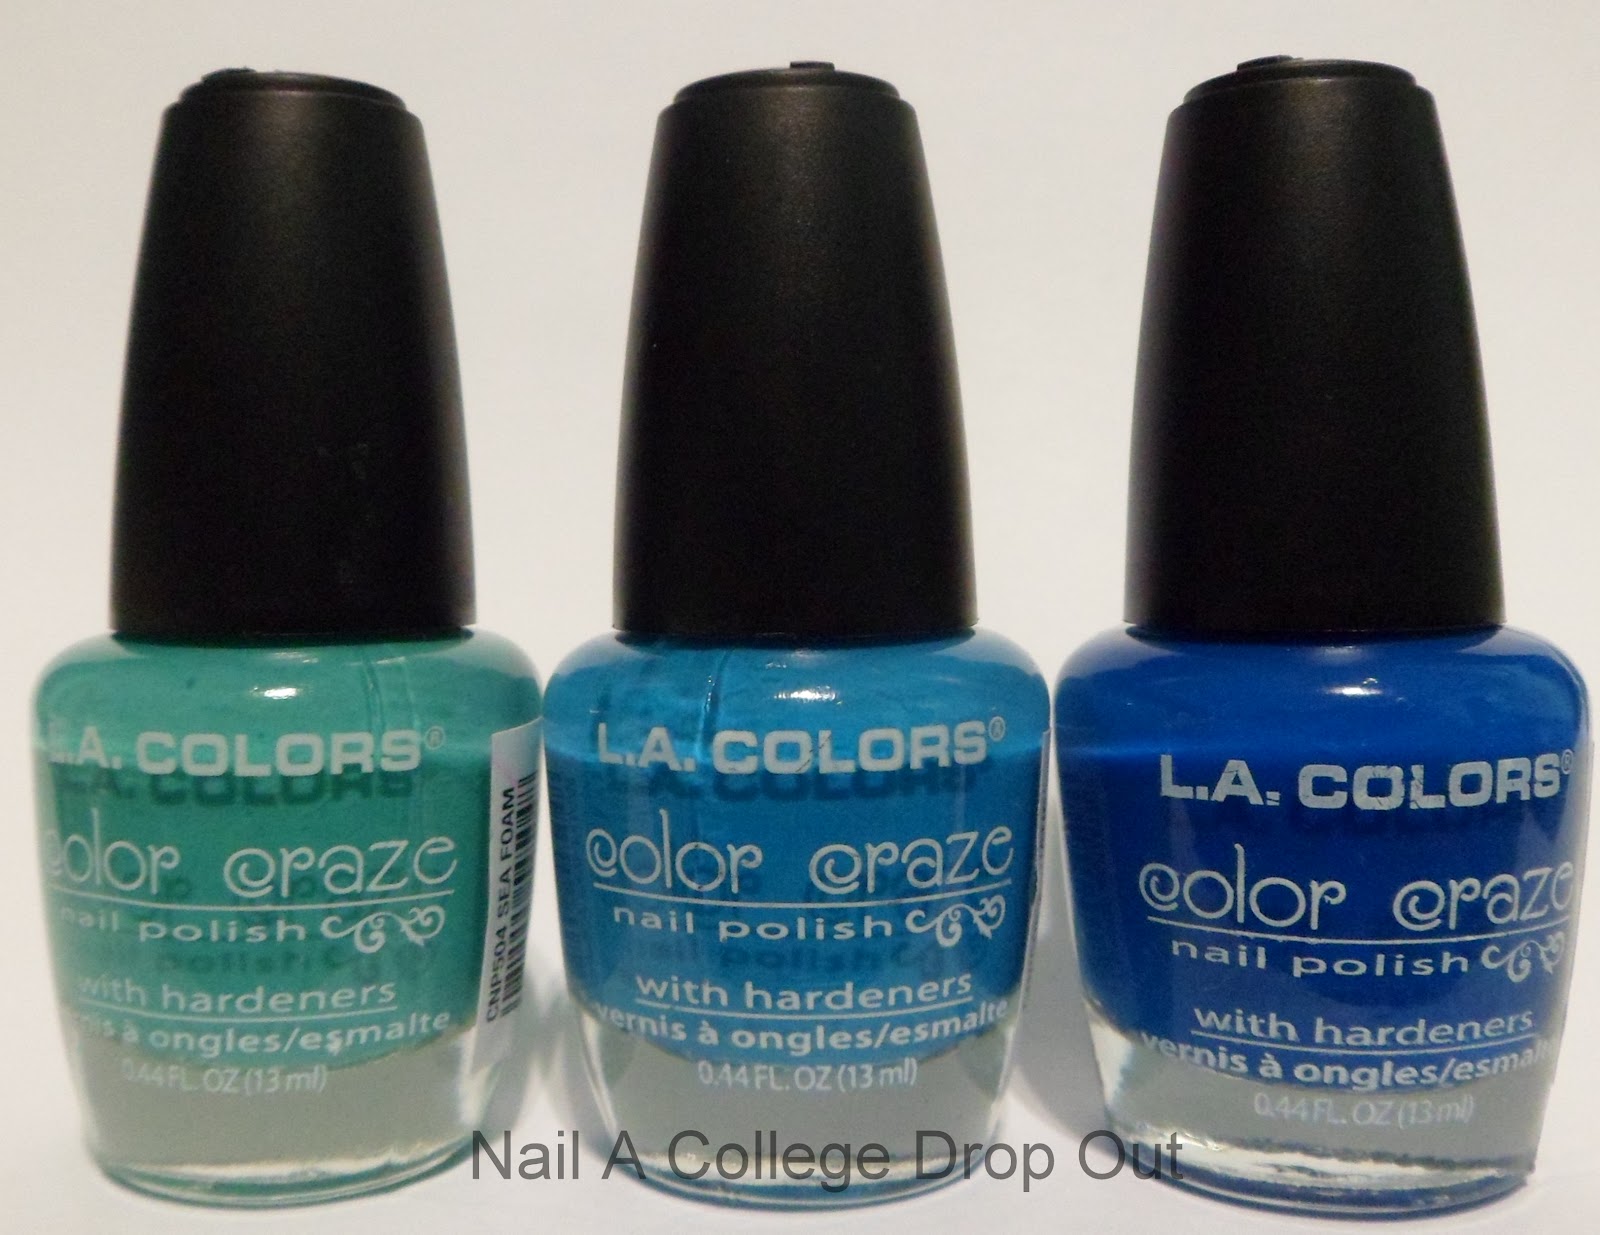 1. L.A. Colors Color Craze Nail Polish Confetti - wide 4